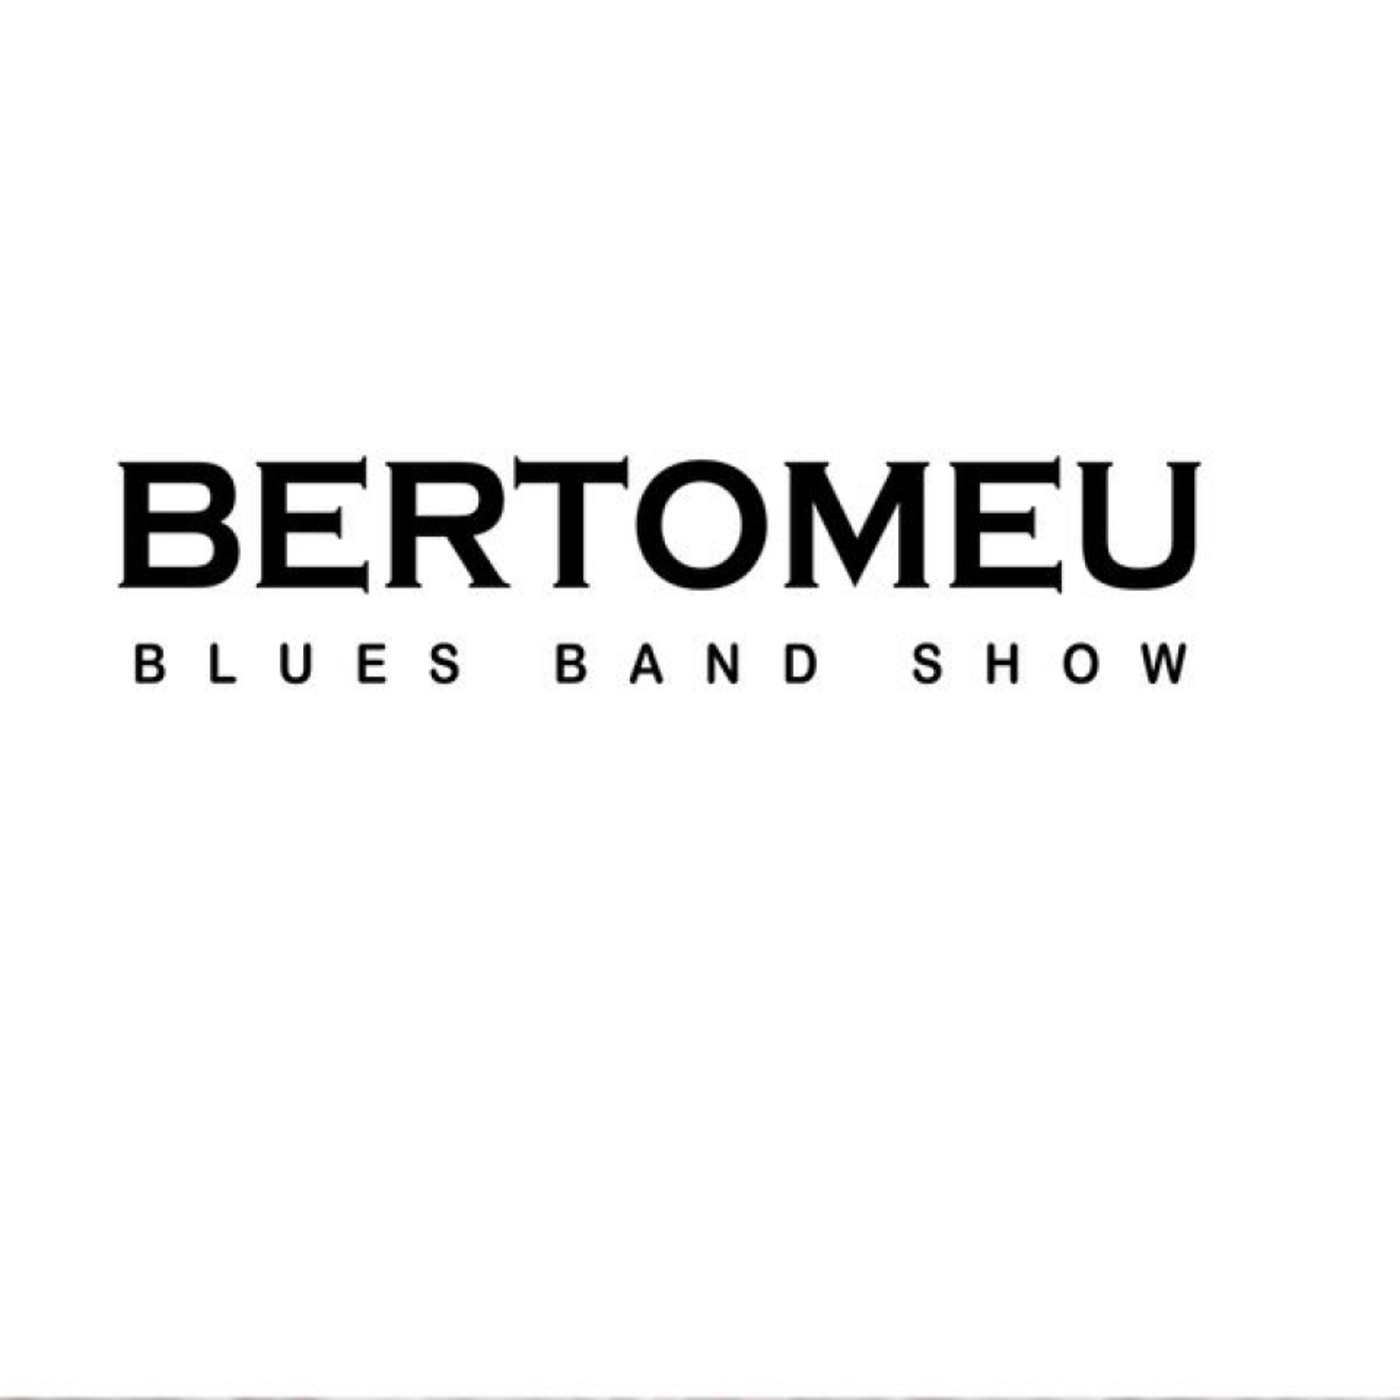 Bertomeu - Bertomeu Blues Band Show | musica en valencià